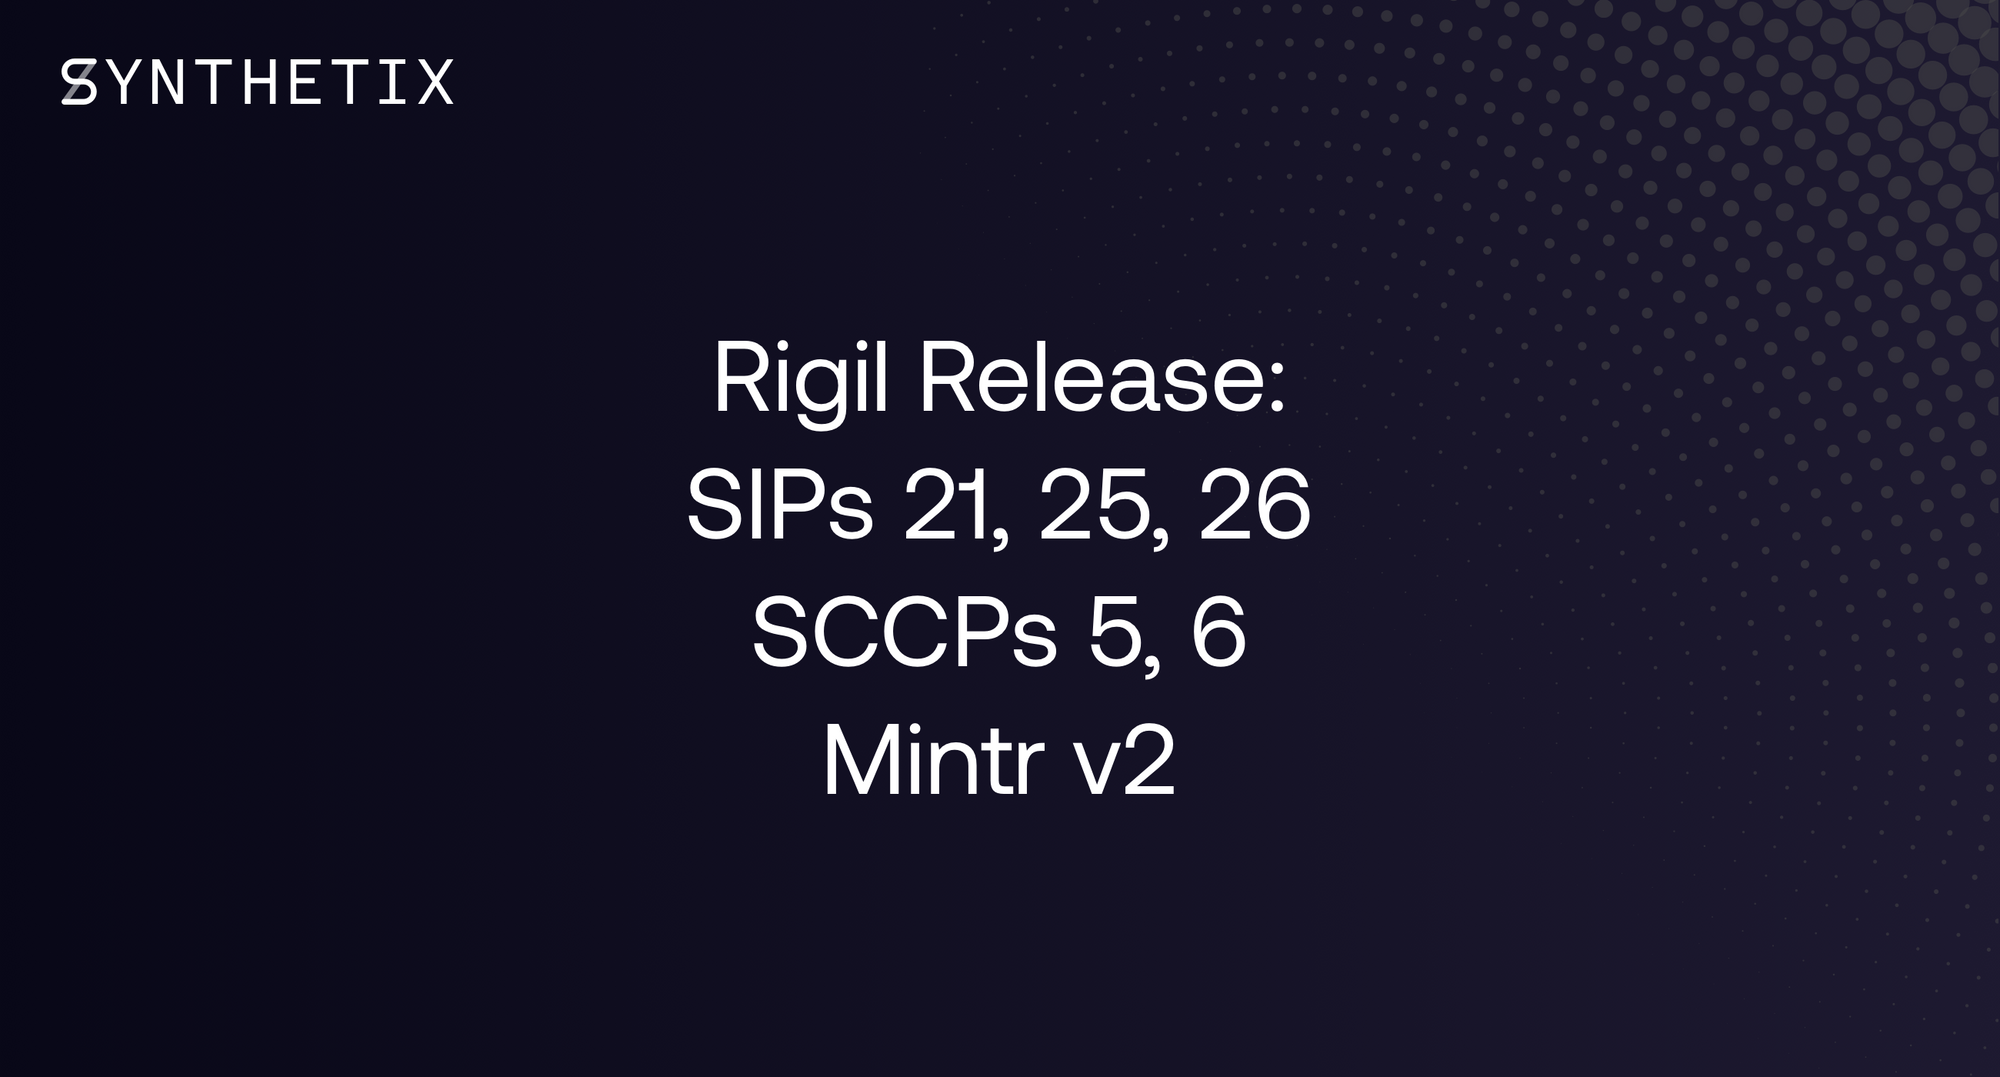 The Rigil Release